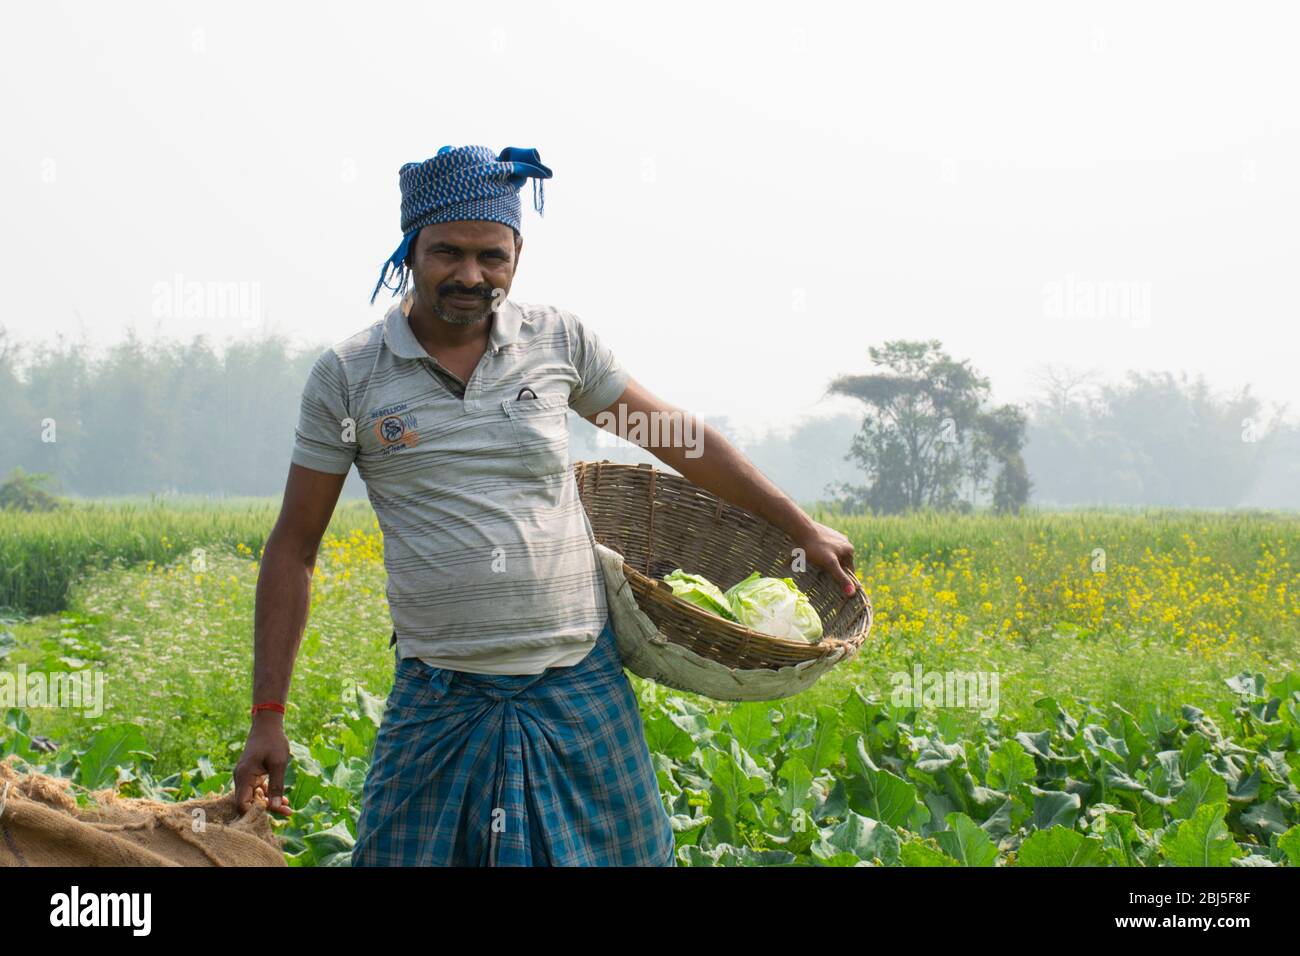 ritratto di contadino che tiene cesto di verdure Foto Stock